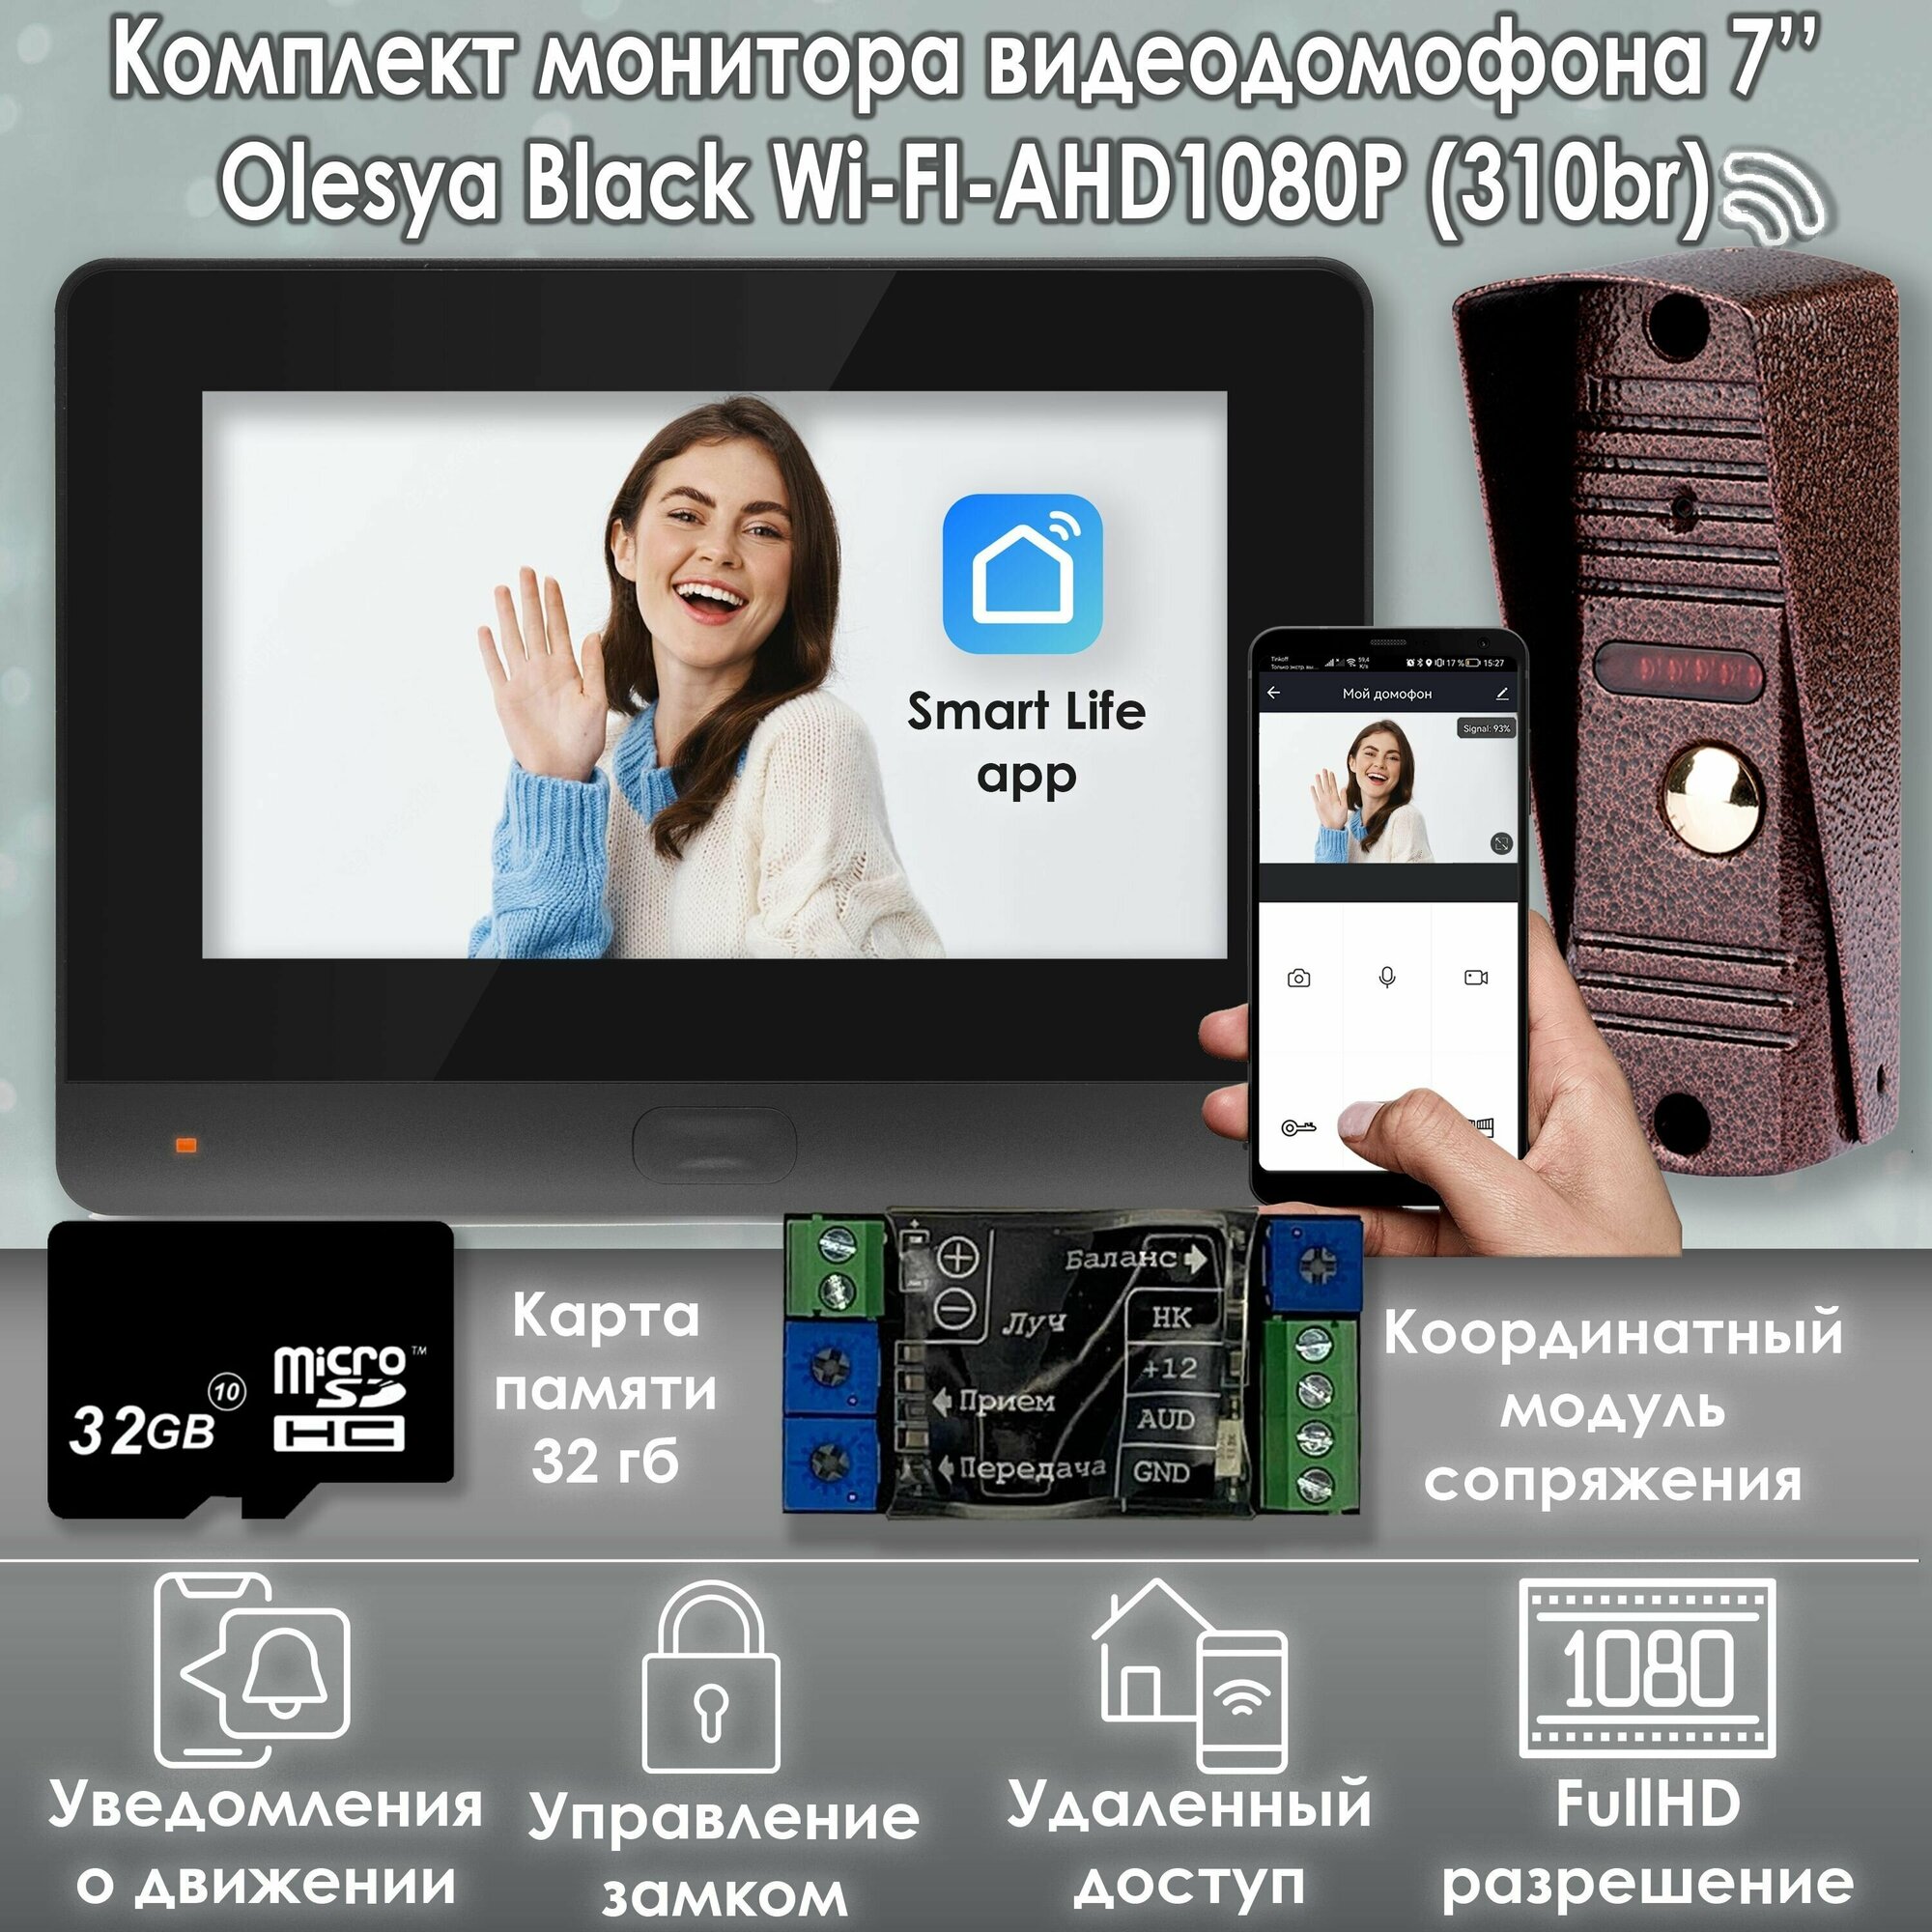 Комплект видеодомофона Olesya Wi-Fi AHD1080P Full HD+вызывная панель(310br). Черный. Экран 7"+модуль сопряжения "МСК-слим" для работы с подъездными домофонами Vizit, Cyfral, Eltis и карта памяти 32гб